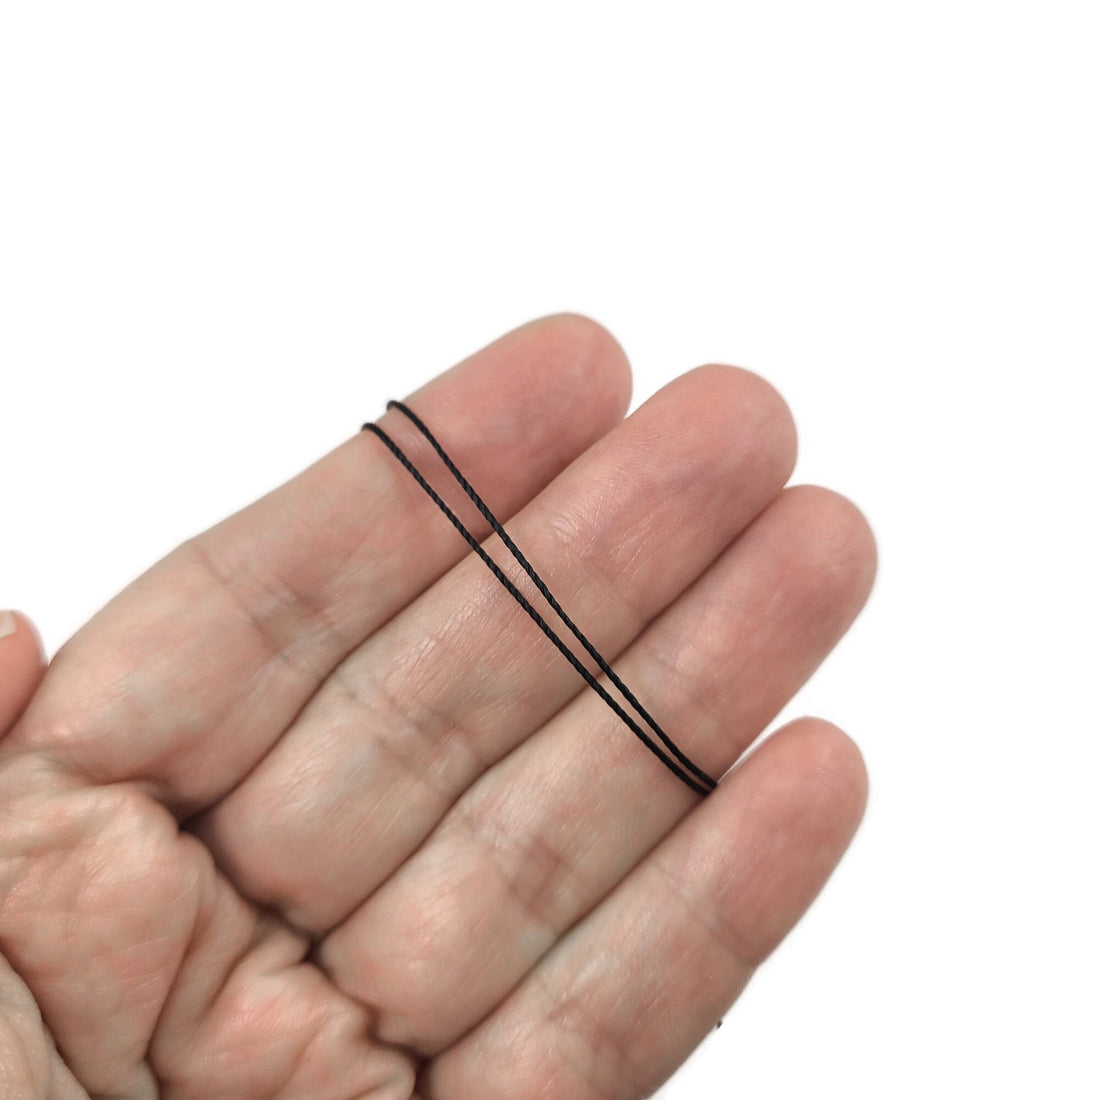 Buy 1mm Diameter Nylon String online